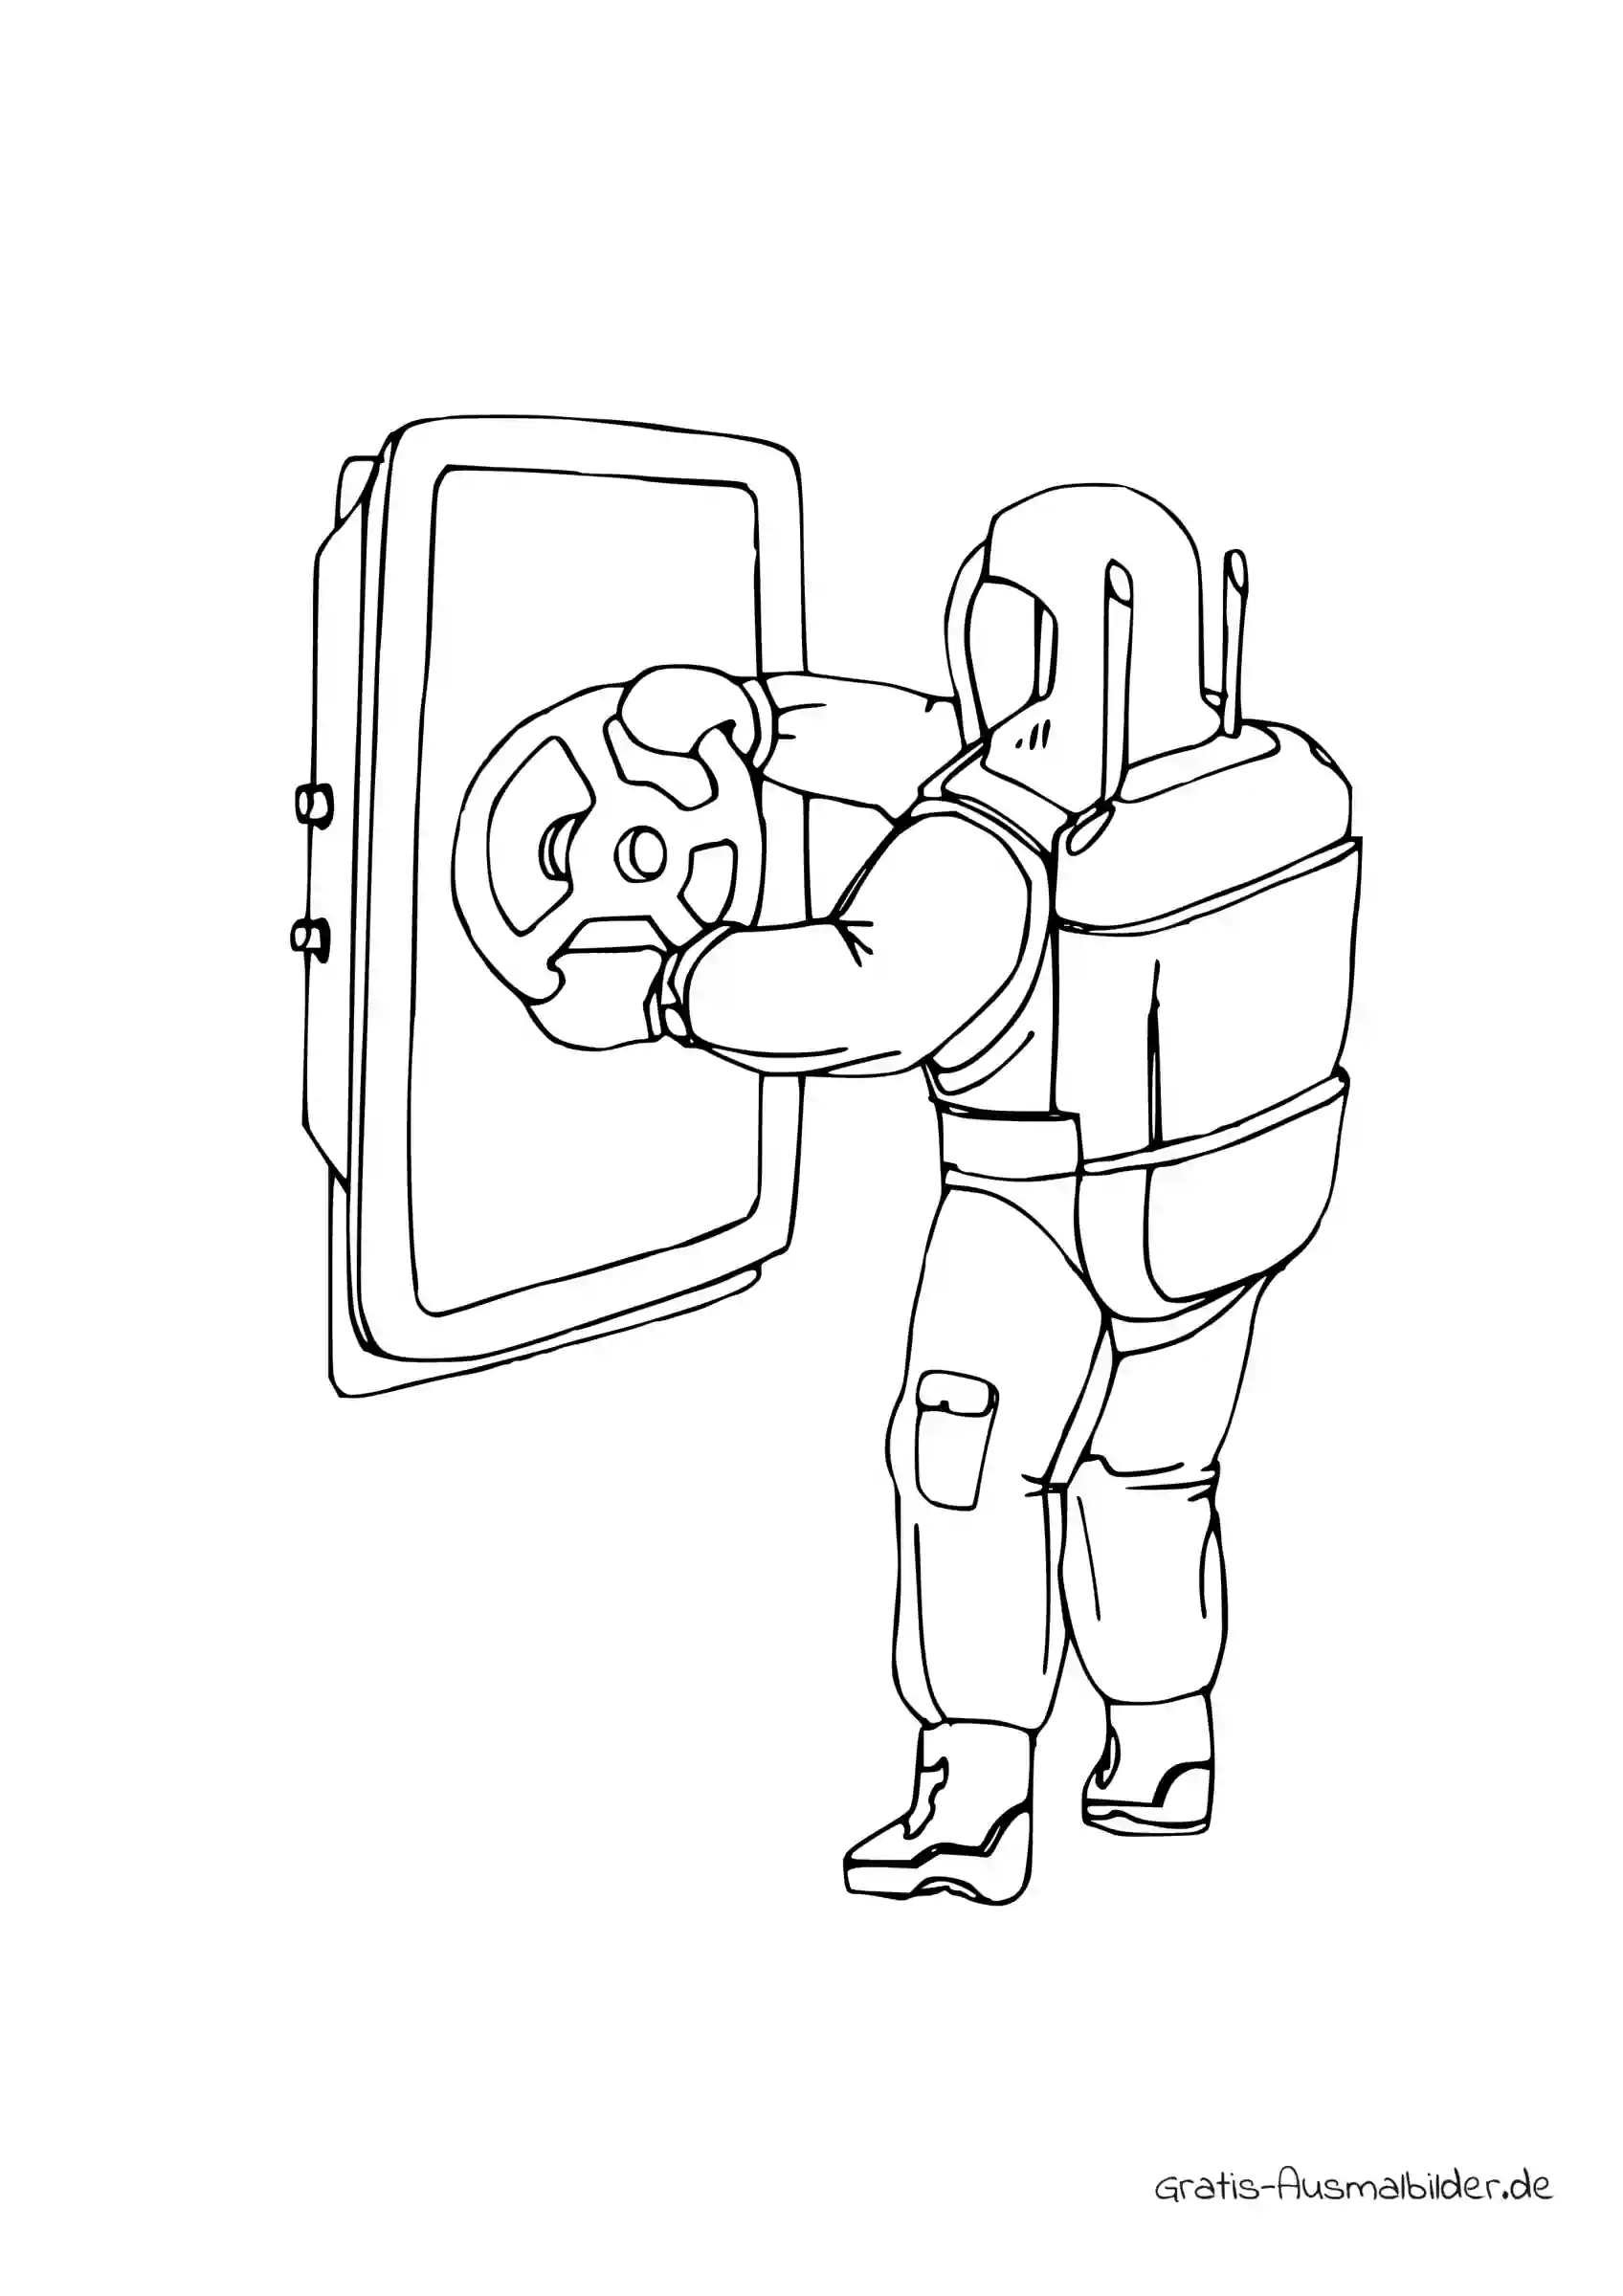 Ausmalbild Astronaut an einer Tür